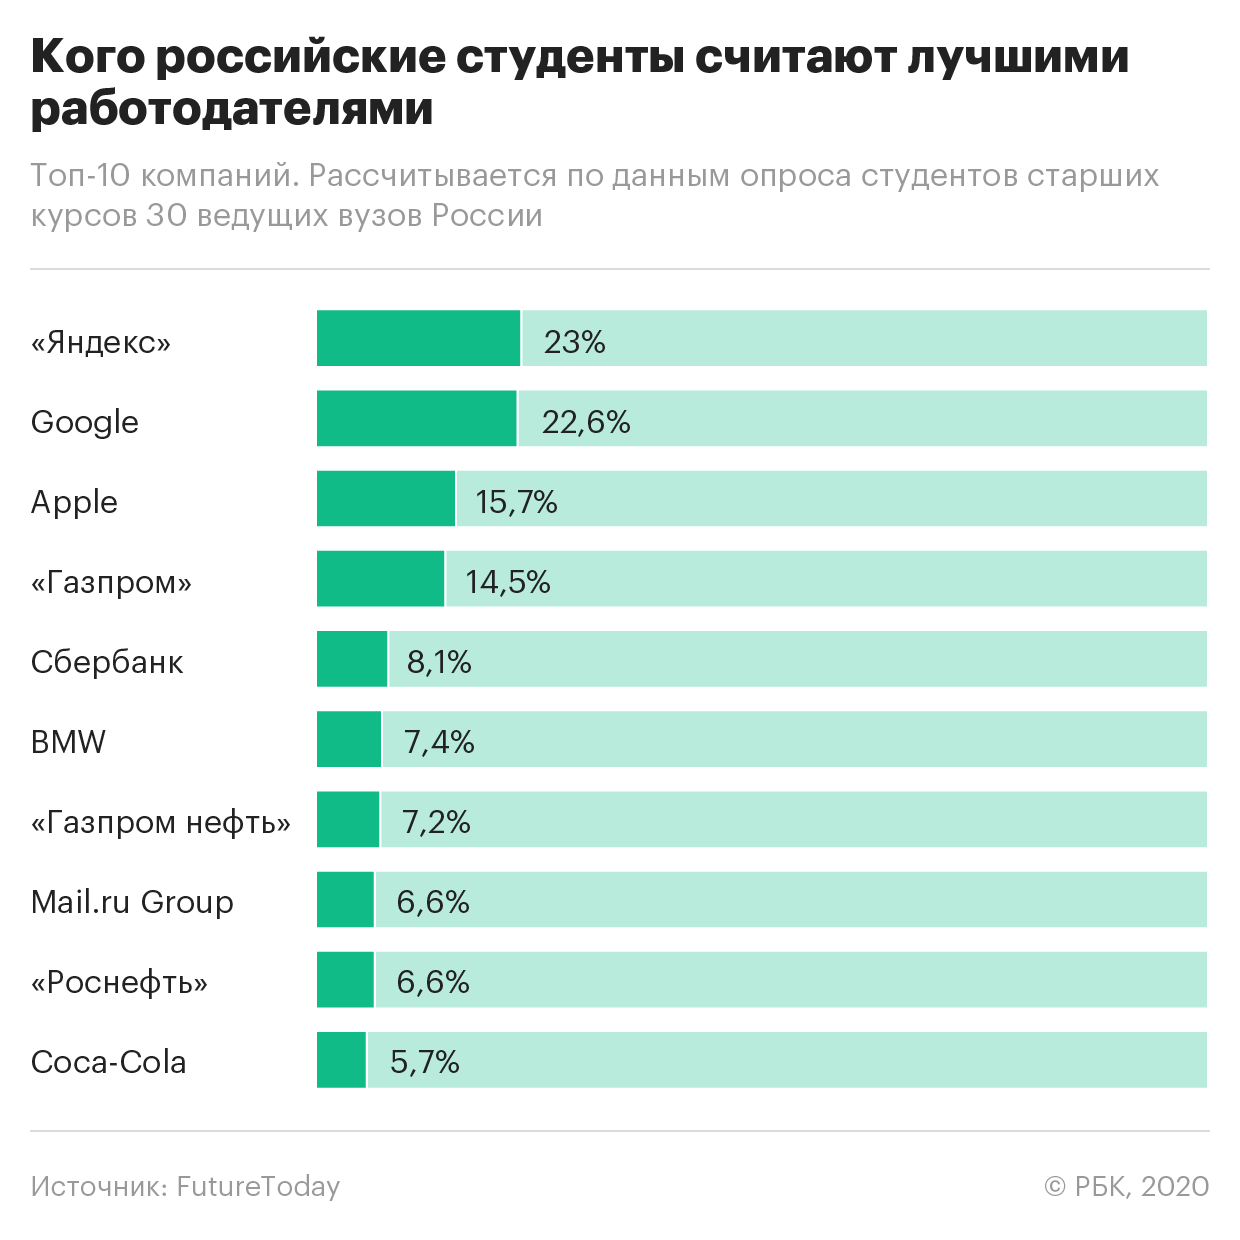 «Яндекс» обогнал Google в рейтинге лучших работодателей для студентов